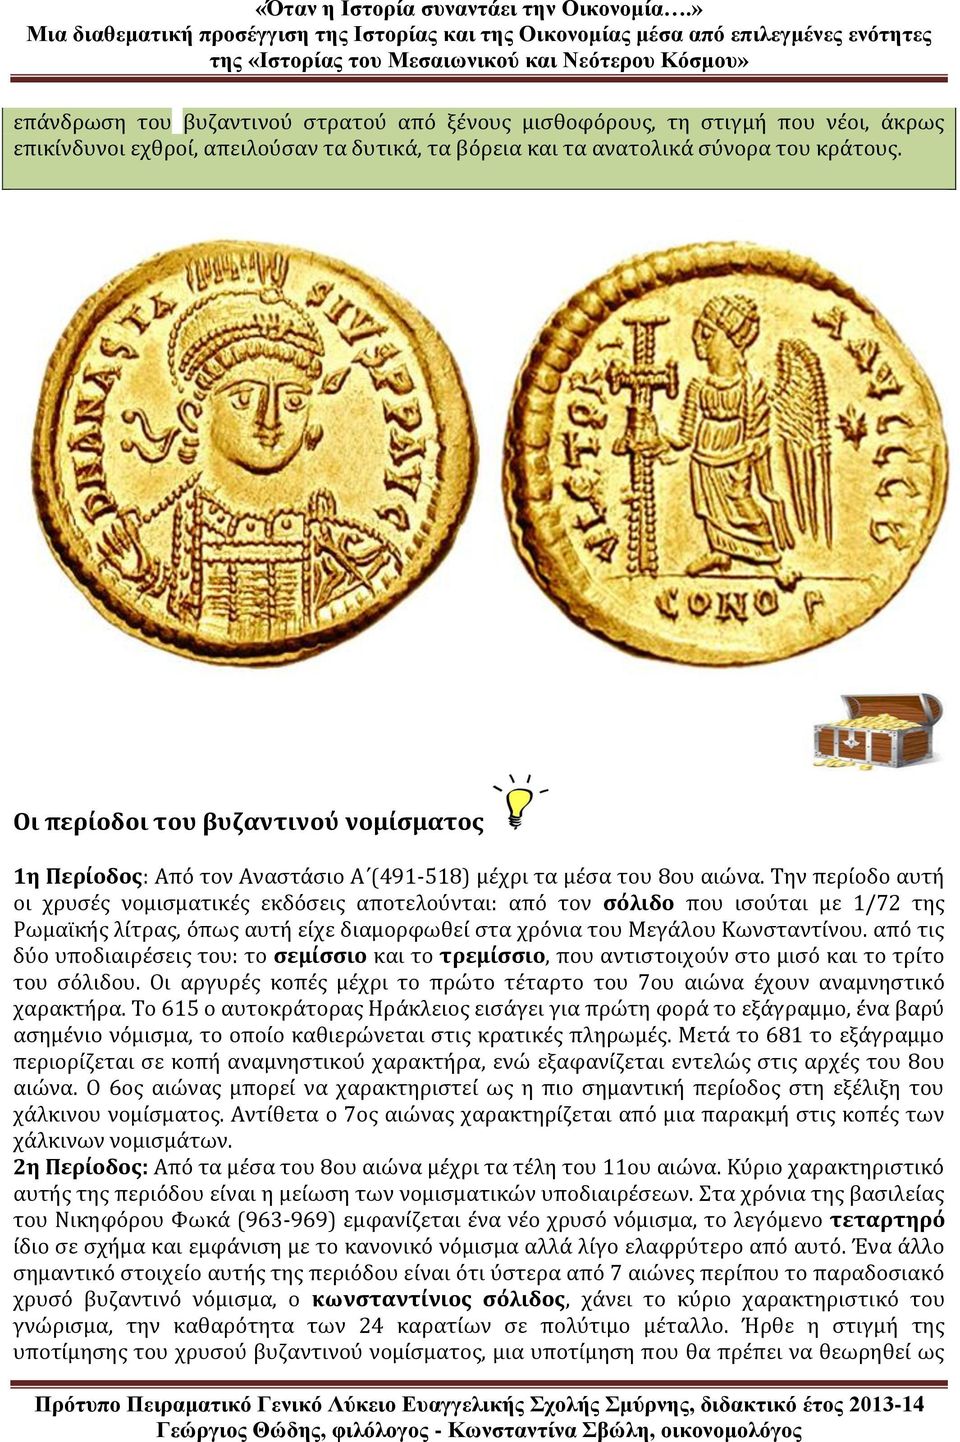 Την περίοδο αυτή οι χρυσές νομισματικές εκδόσεις αποτελούνται: από τον σόλιδο που ισούται με 1/72 της Ρωμαϊκής λίτρας, όπως αυτή είχε διαμορφωθεί στα χρόνια του Μεγάλου Κωνσταντίνου.